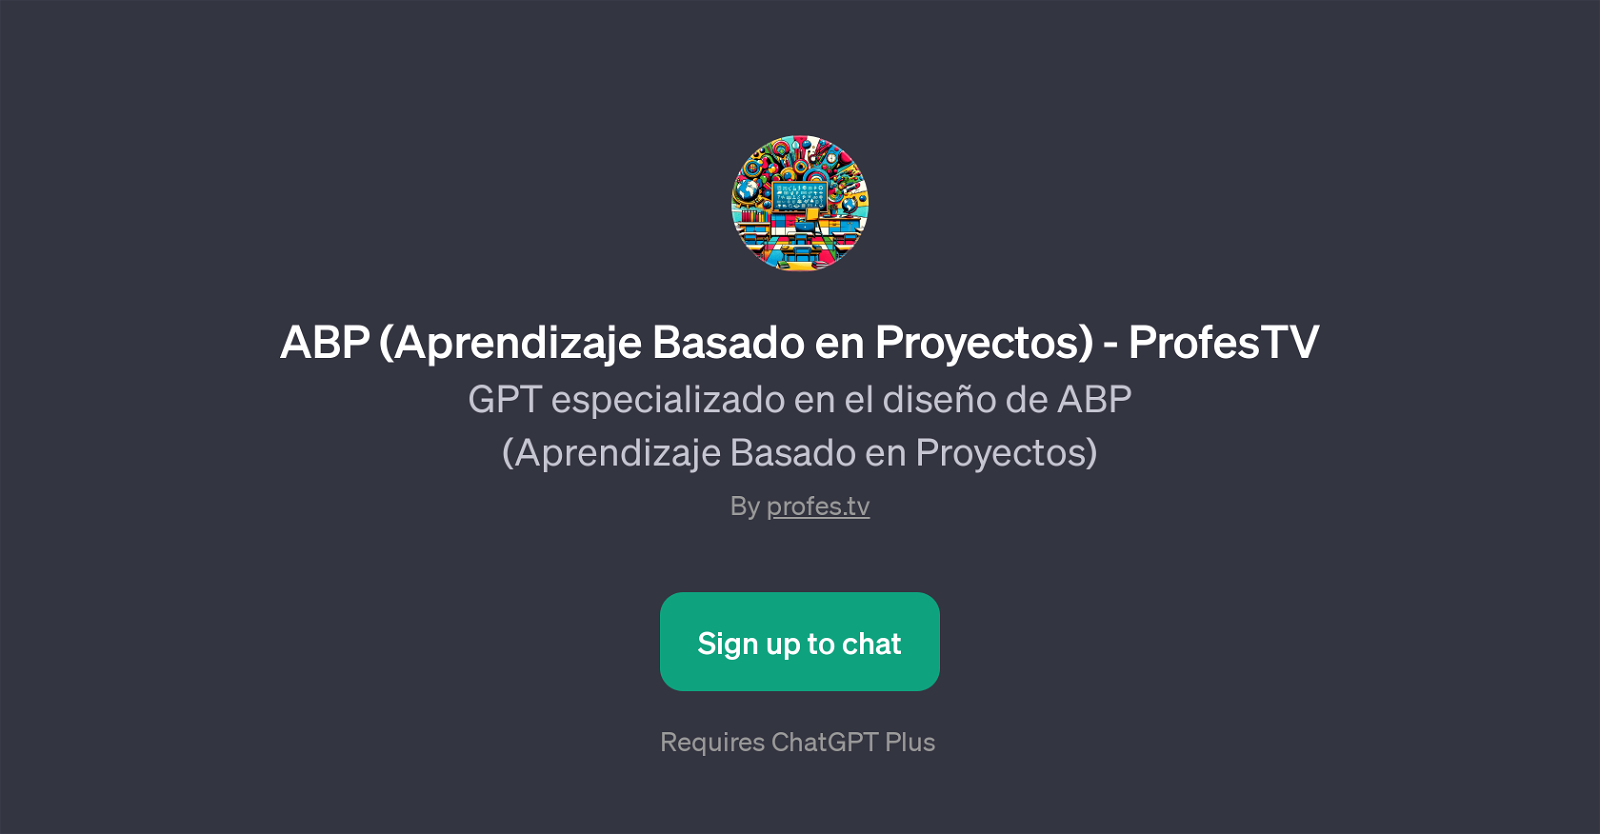 ABP (Aprendizaje Basado en Proyectos) - ProfesTV website